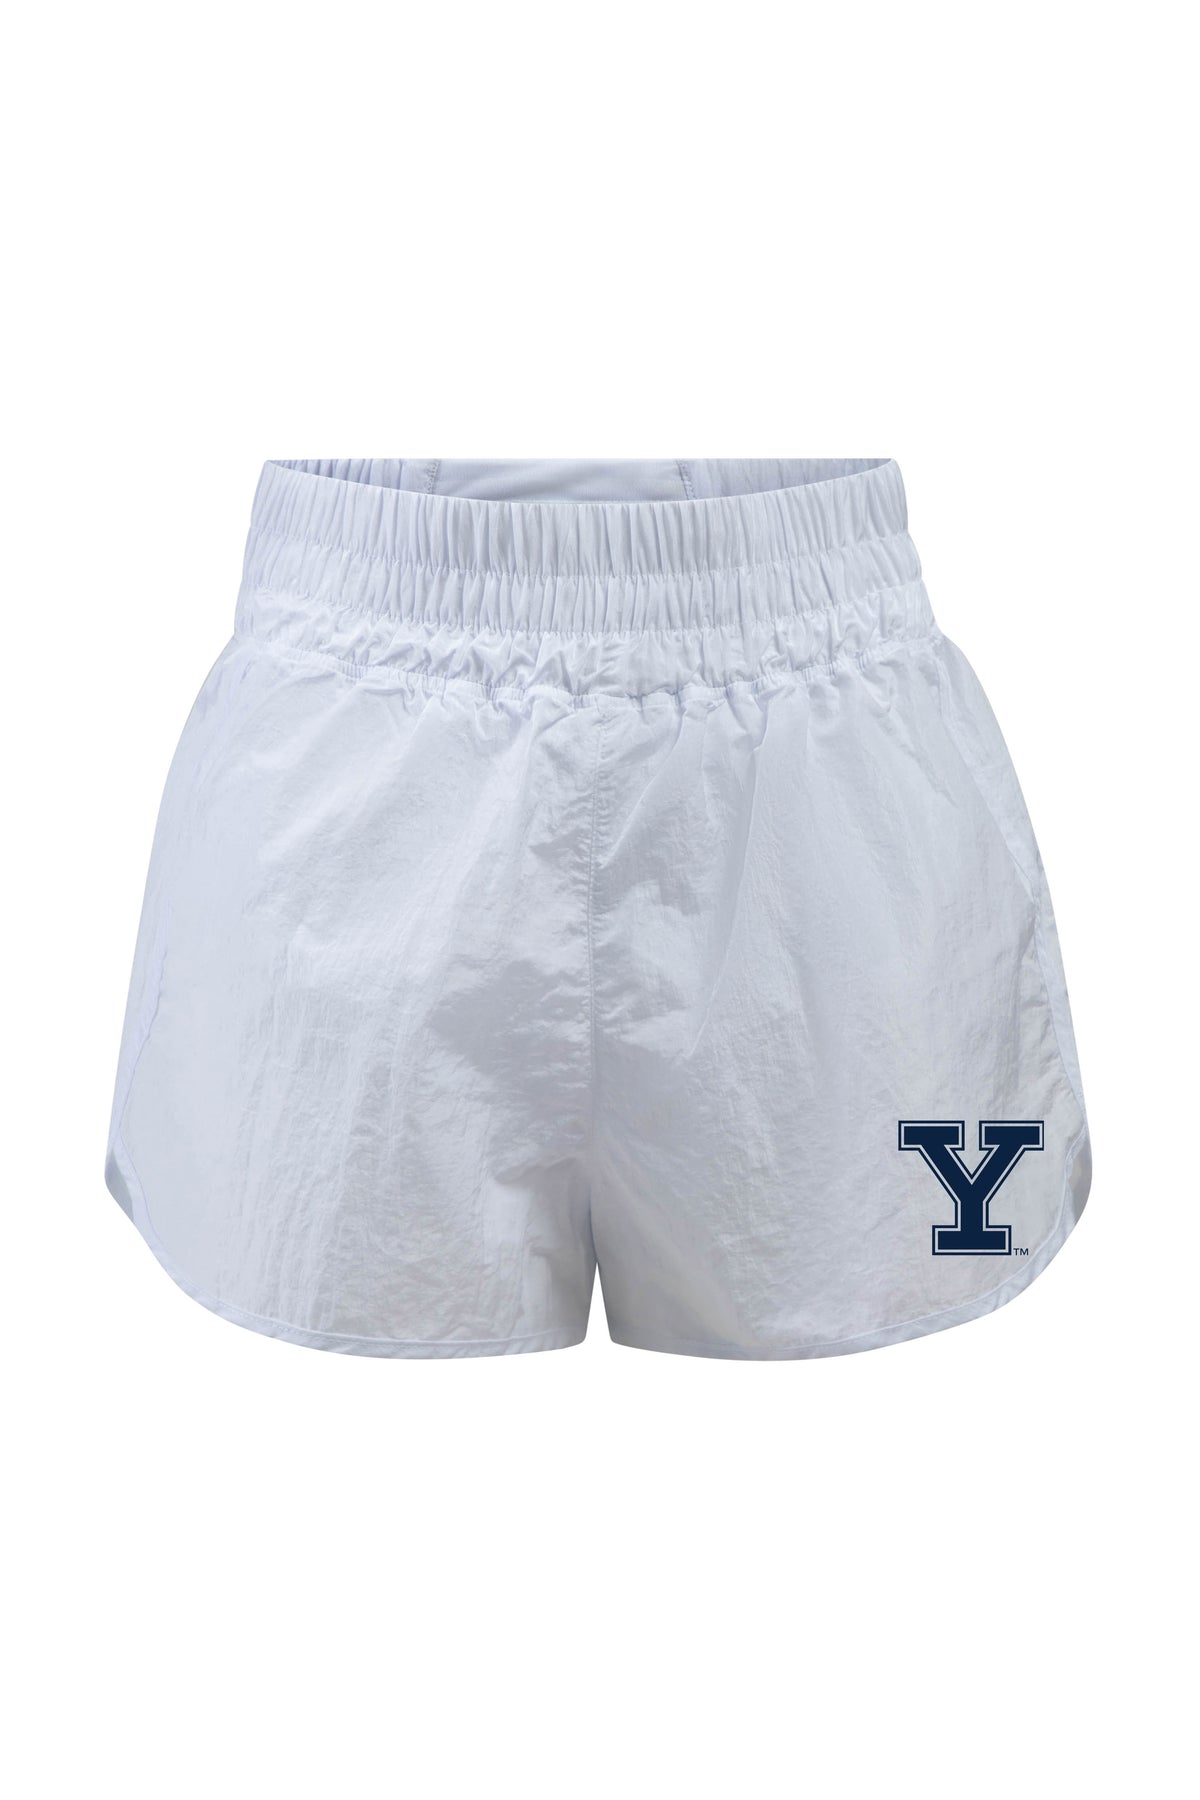 Yale University Boxer Short